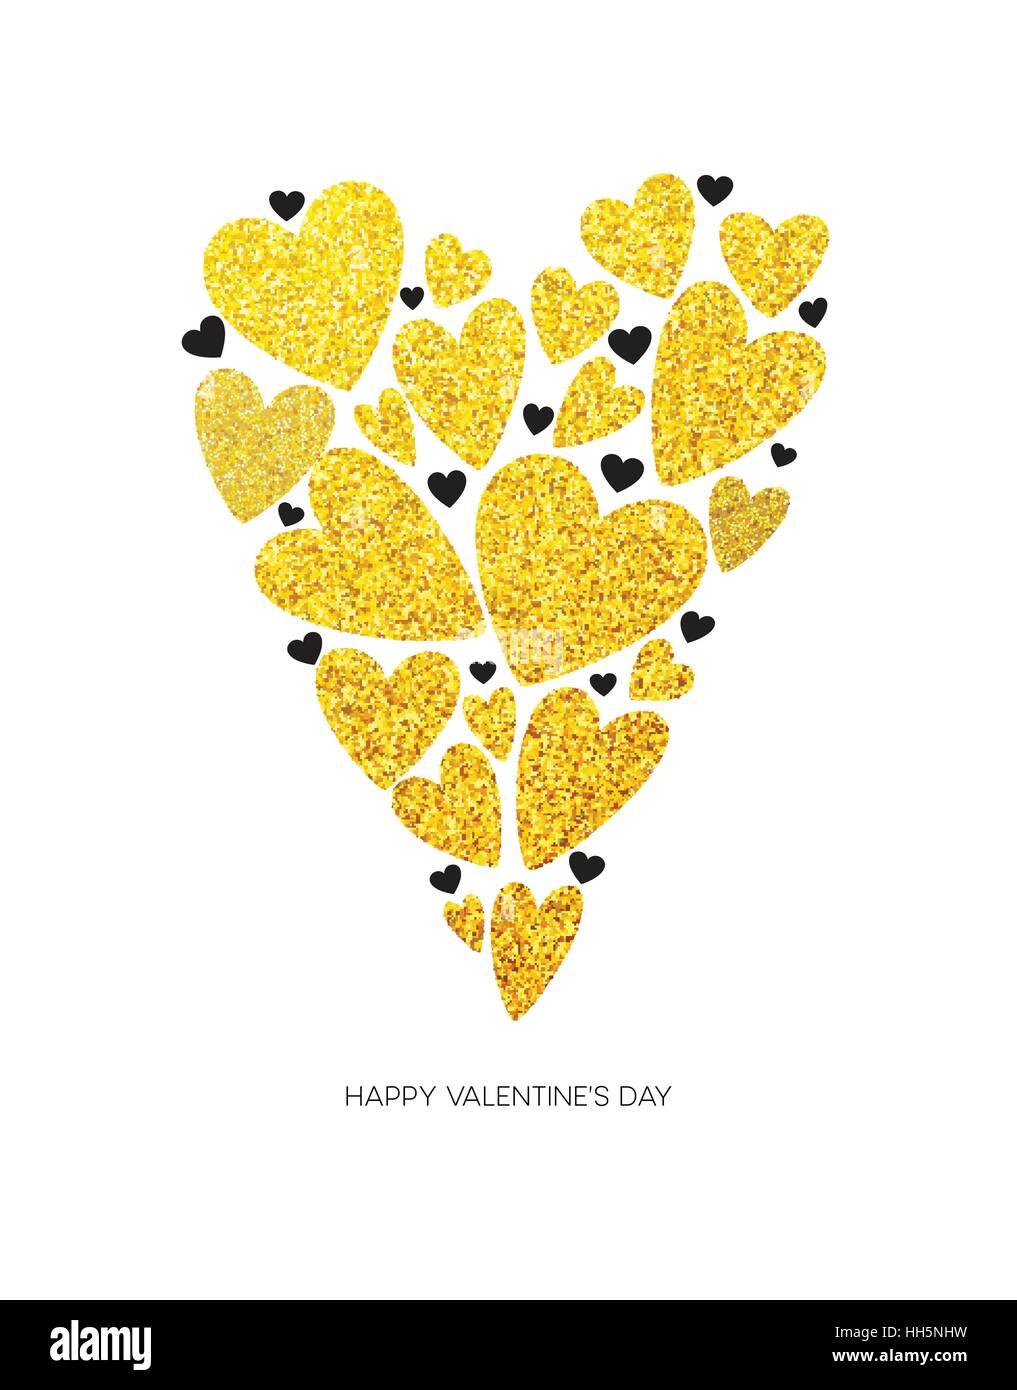 Happy Valentinstag Liebe Grußkarte mit weißen low-Poly Style Herzform in golden Glitter-Hintergrund. Vektor-illustration Stock Vektor